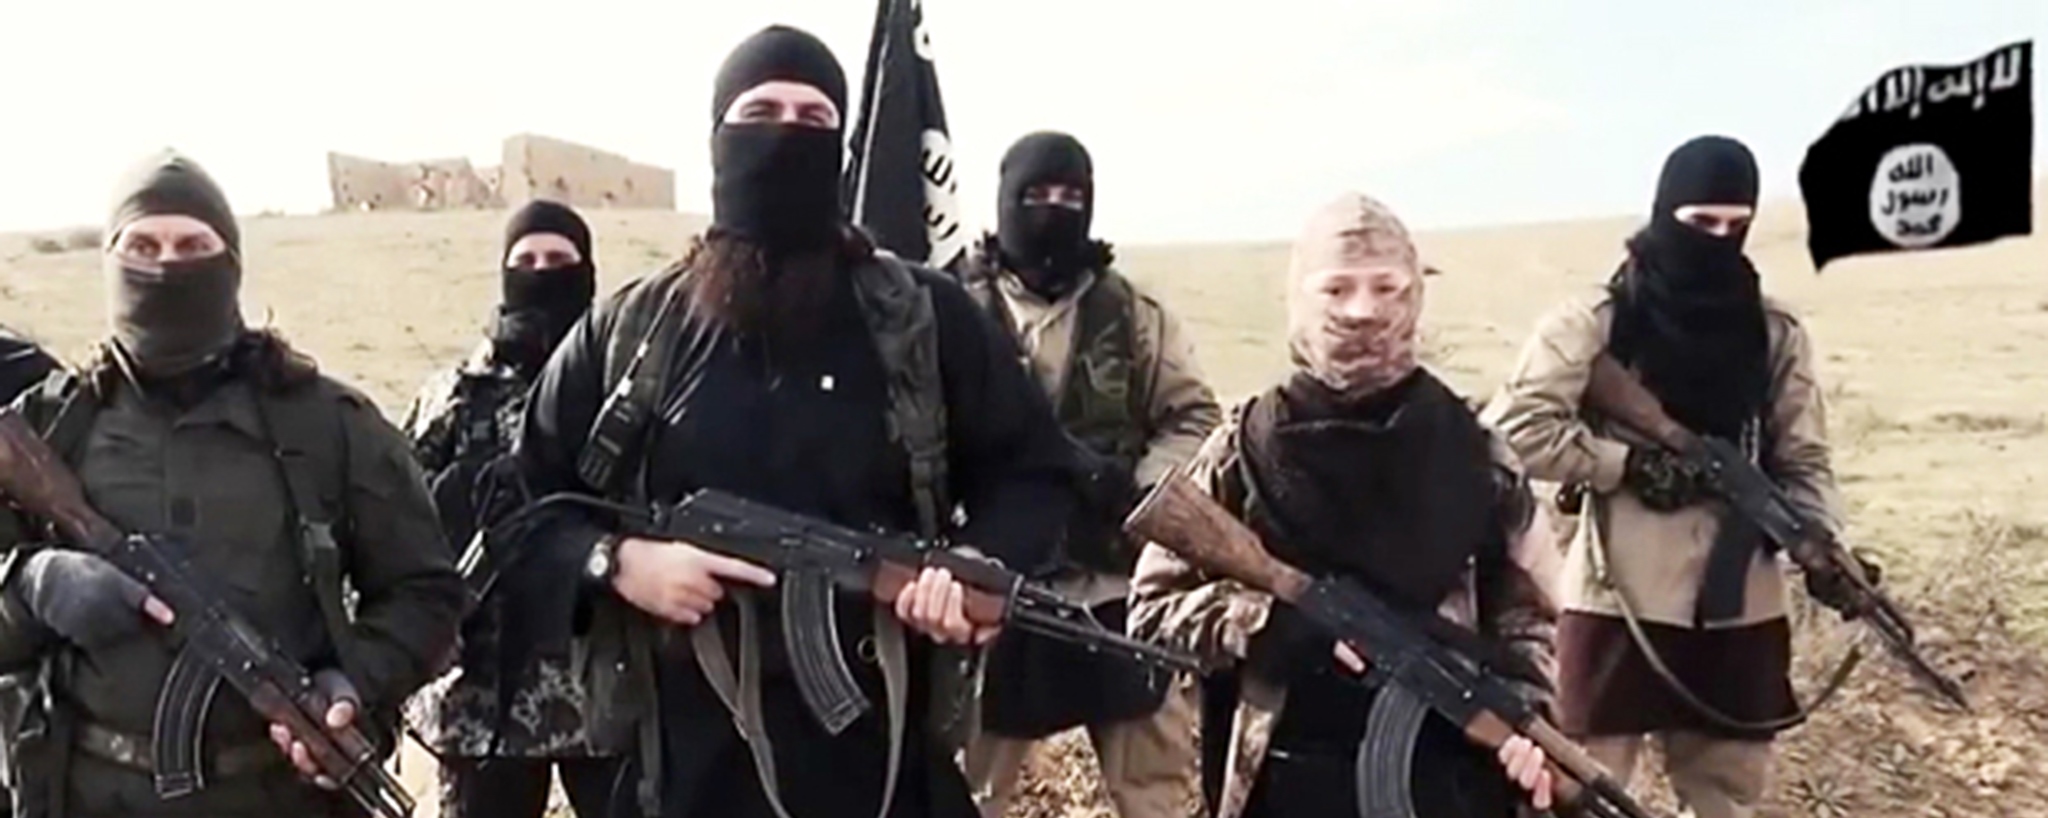 Μυστική μονάδα του ISIS εκπαιδεύει καμικάζι για νέες επιθέσεις σε δυτικές χώρες (φωτό)